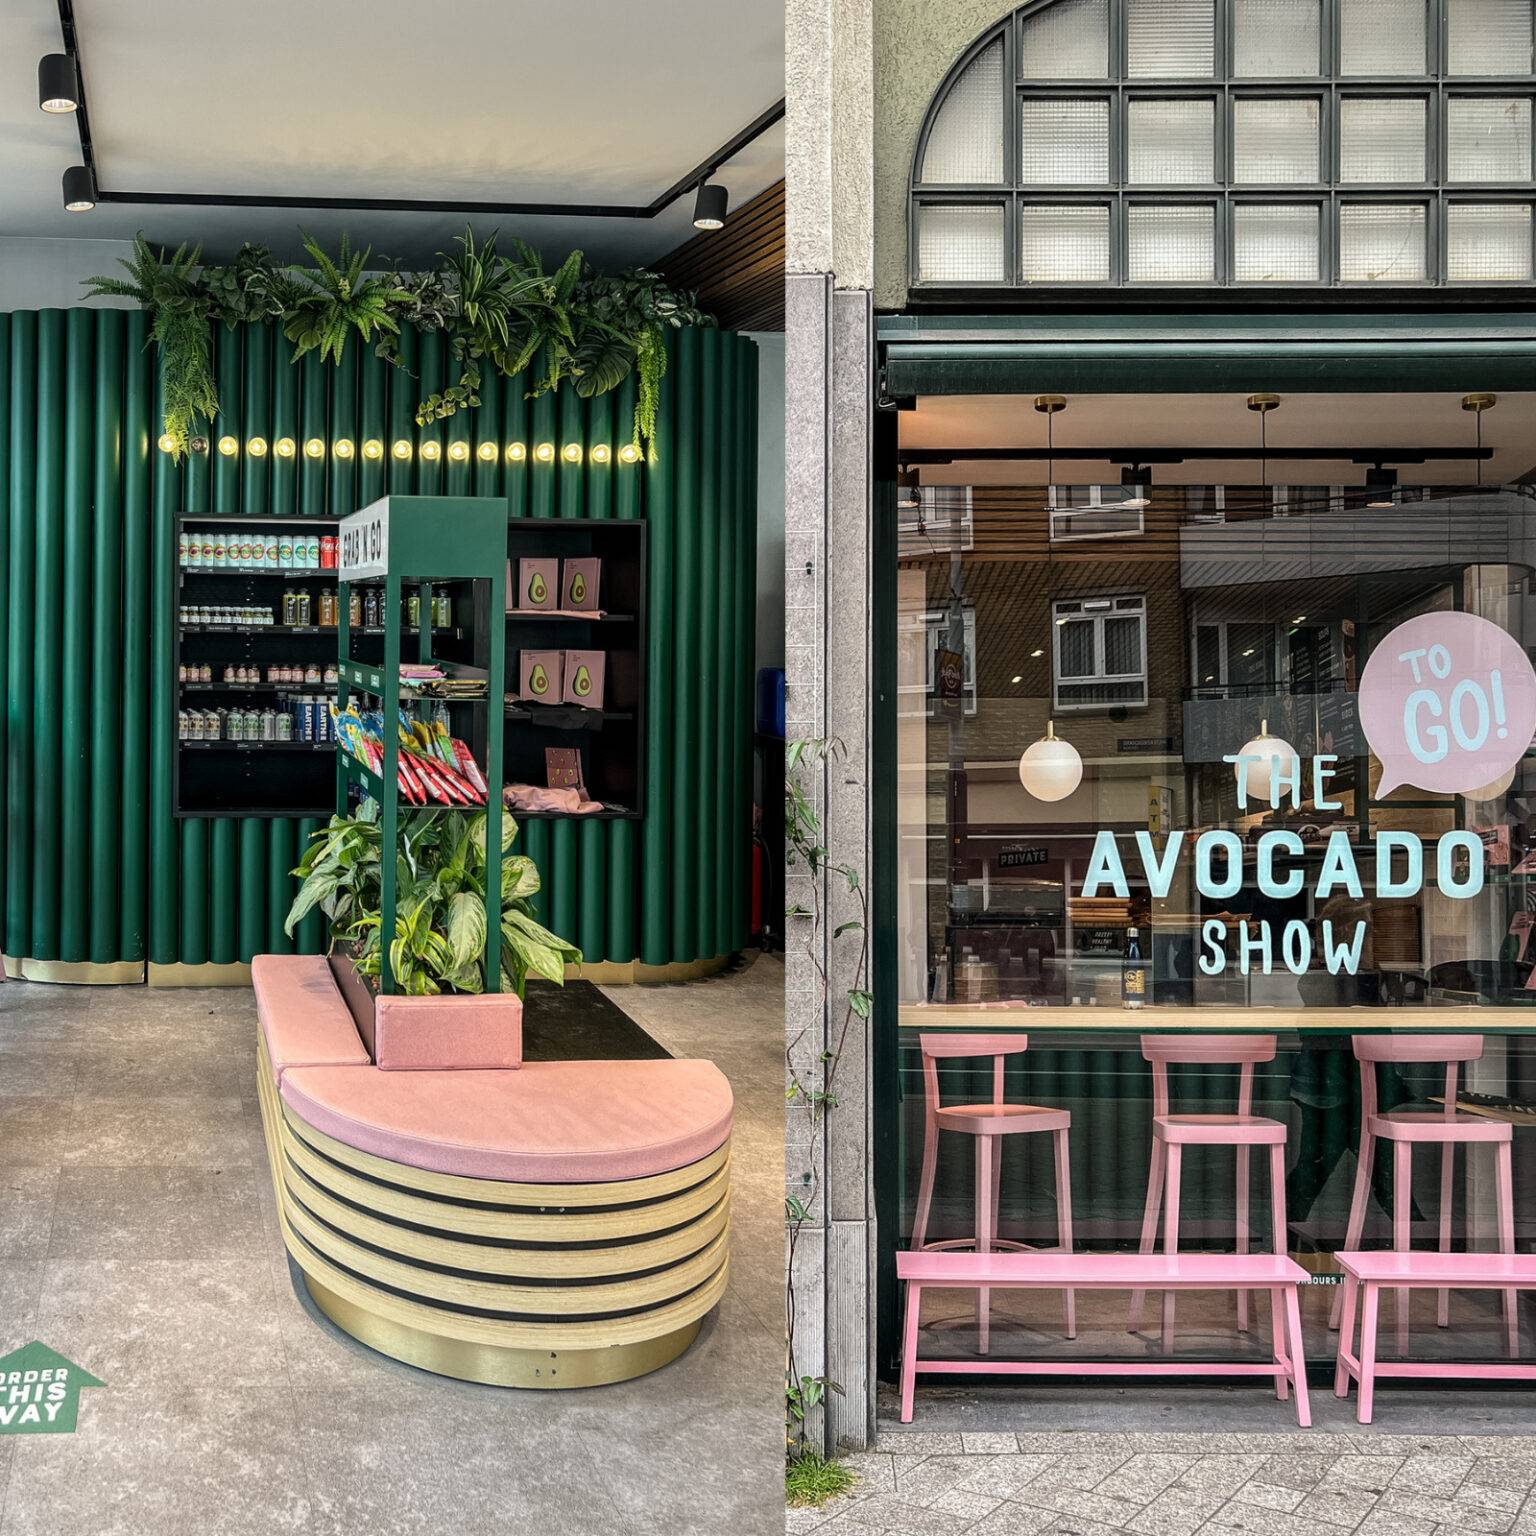 Die Farben grün, rosa und gold geben einen verführerischen Einblick in dieses gesunde Restaurant in Amsterdam.